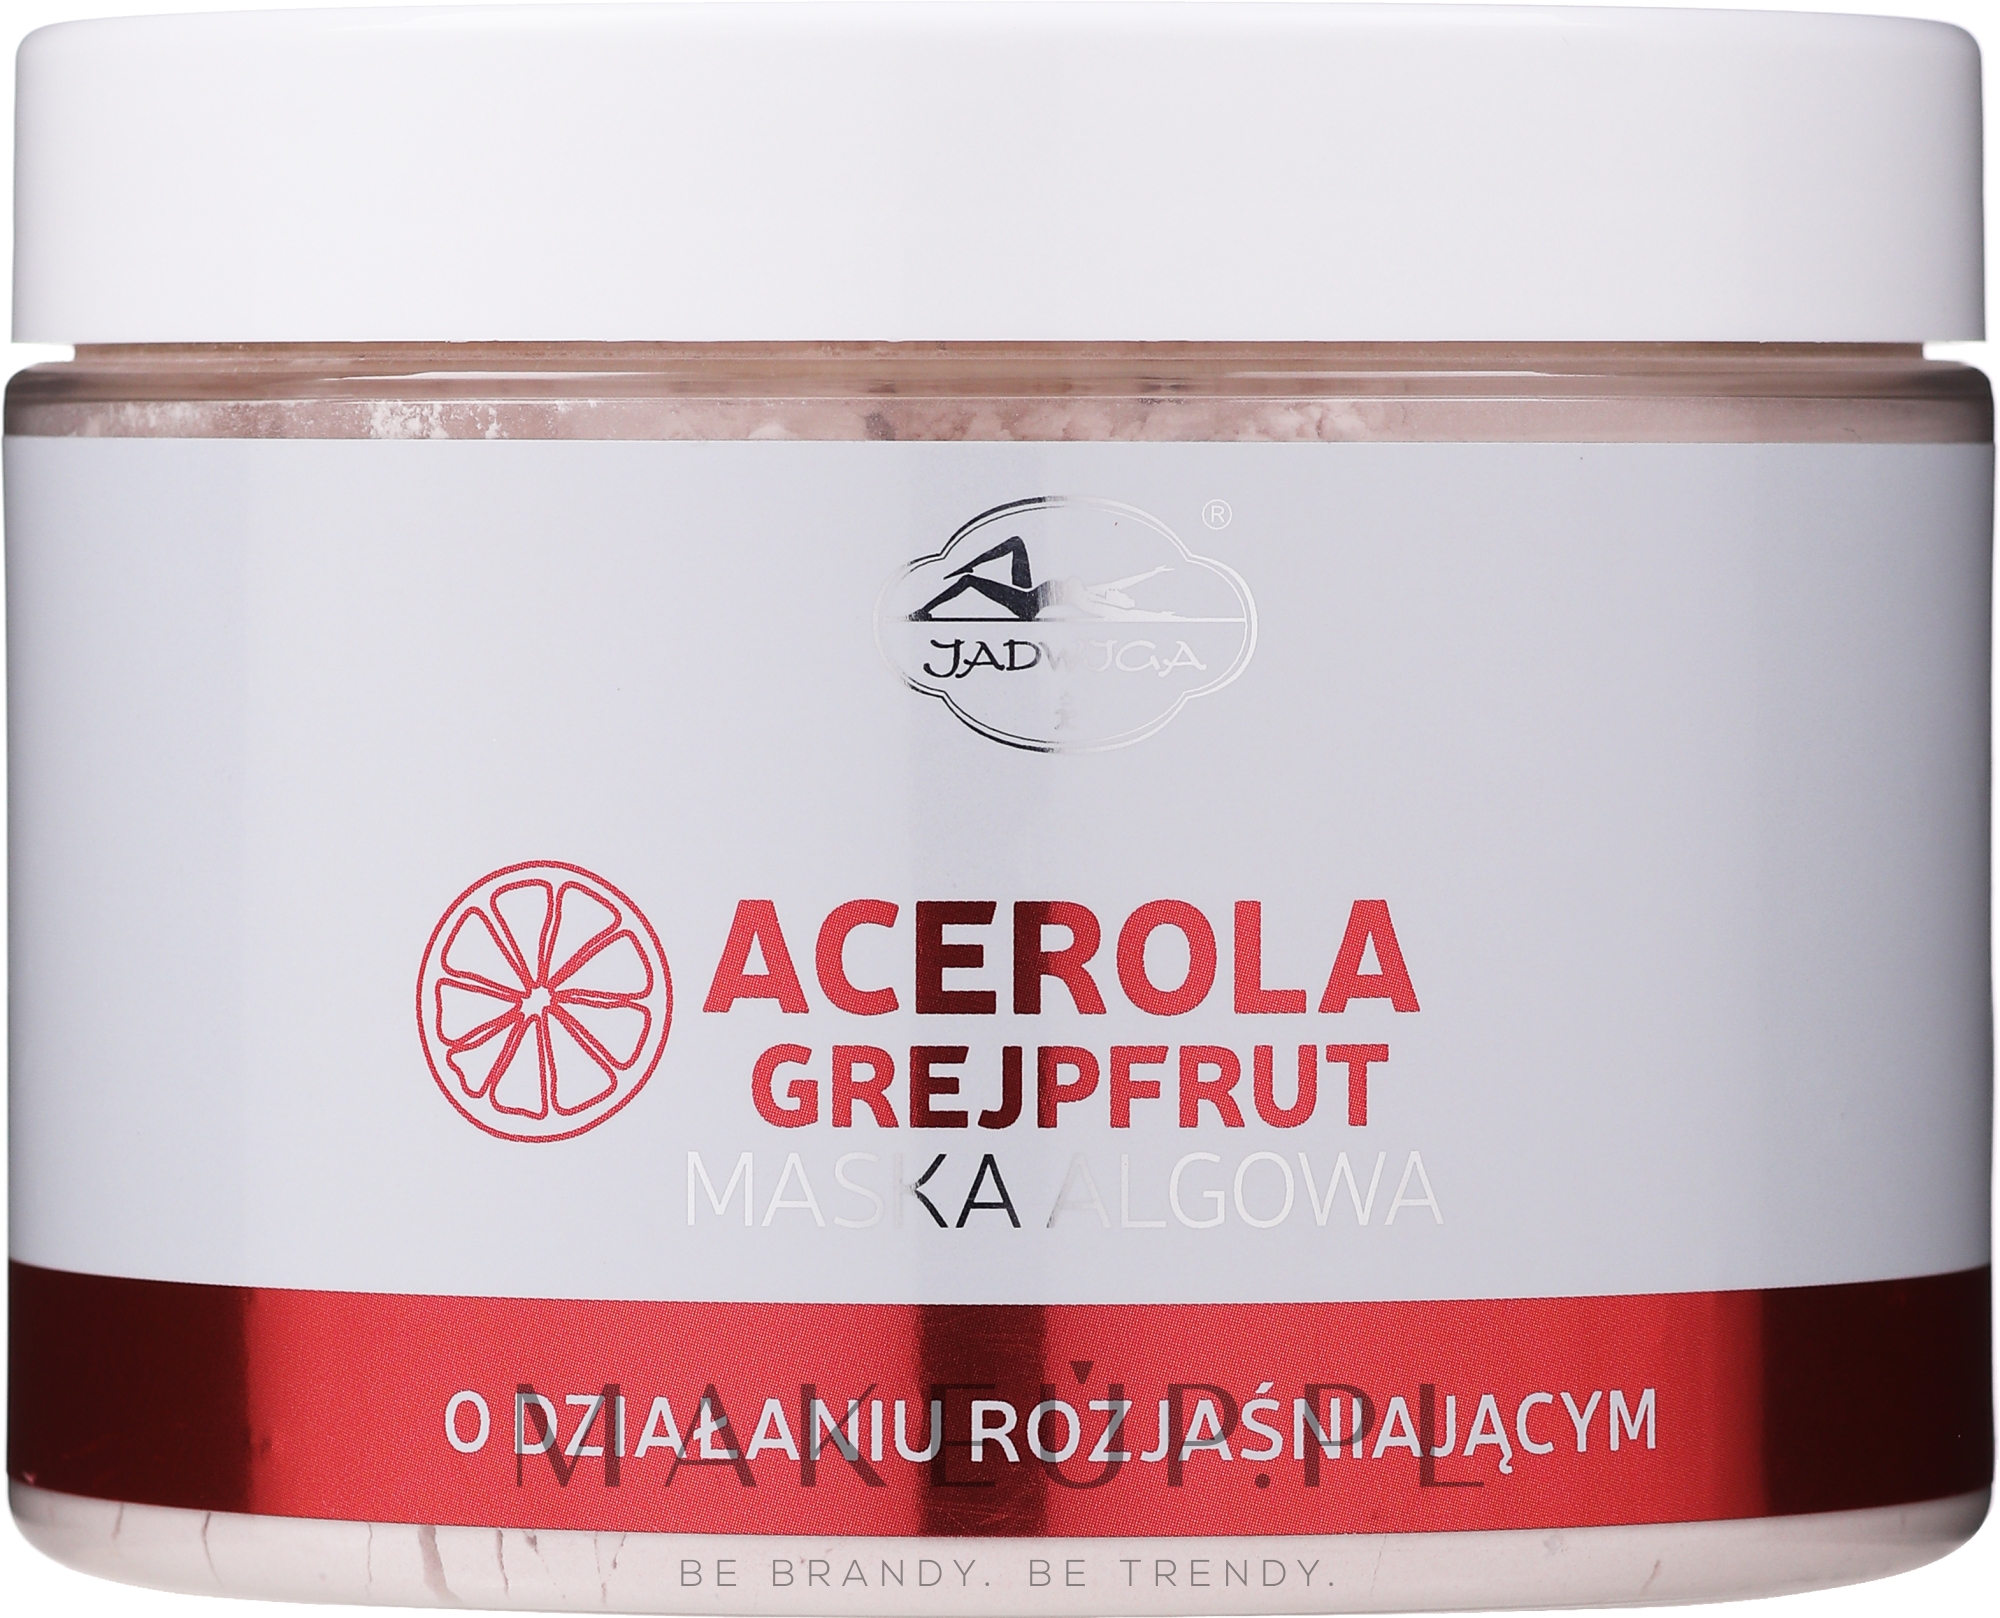 Rozjaśniająca maska algowa do twarzy Acerola i grejpfrut - Jadwiga Acerola And Grapefruit Face Mask — Zdjęcie 500 ml